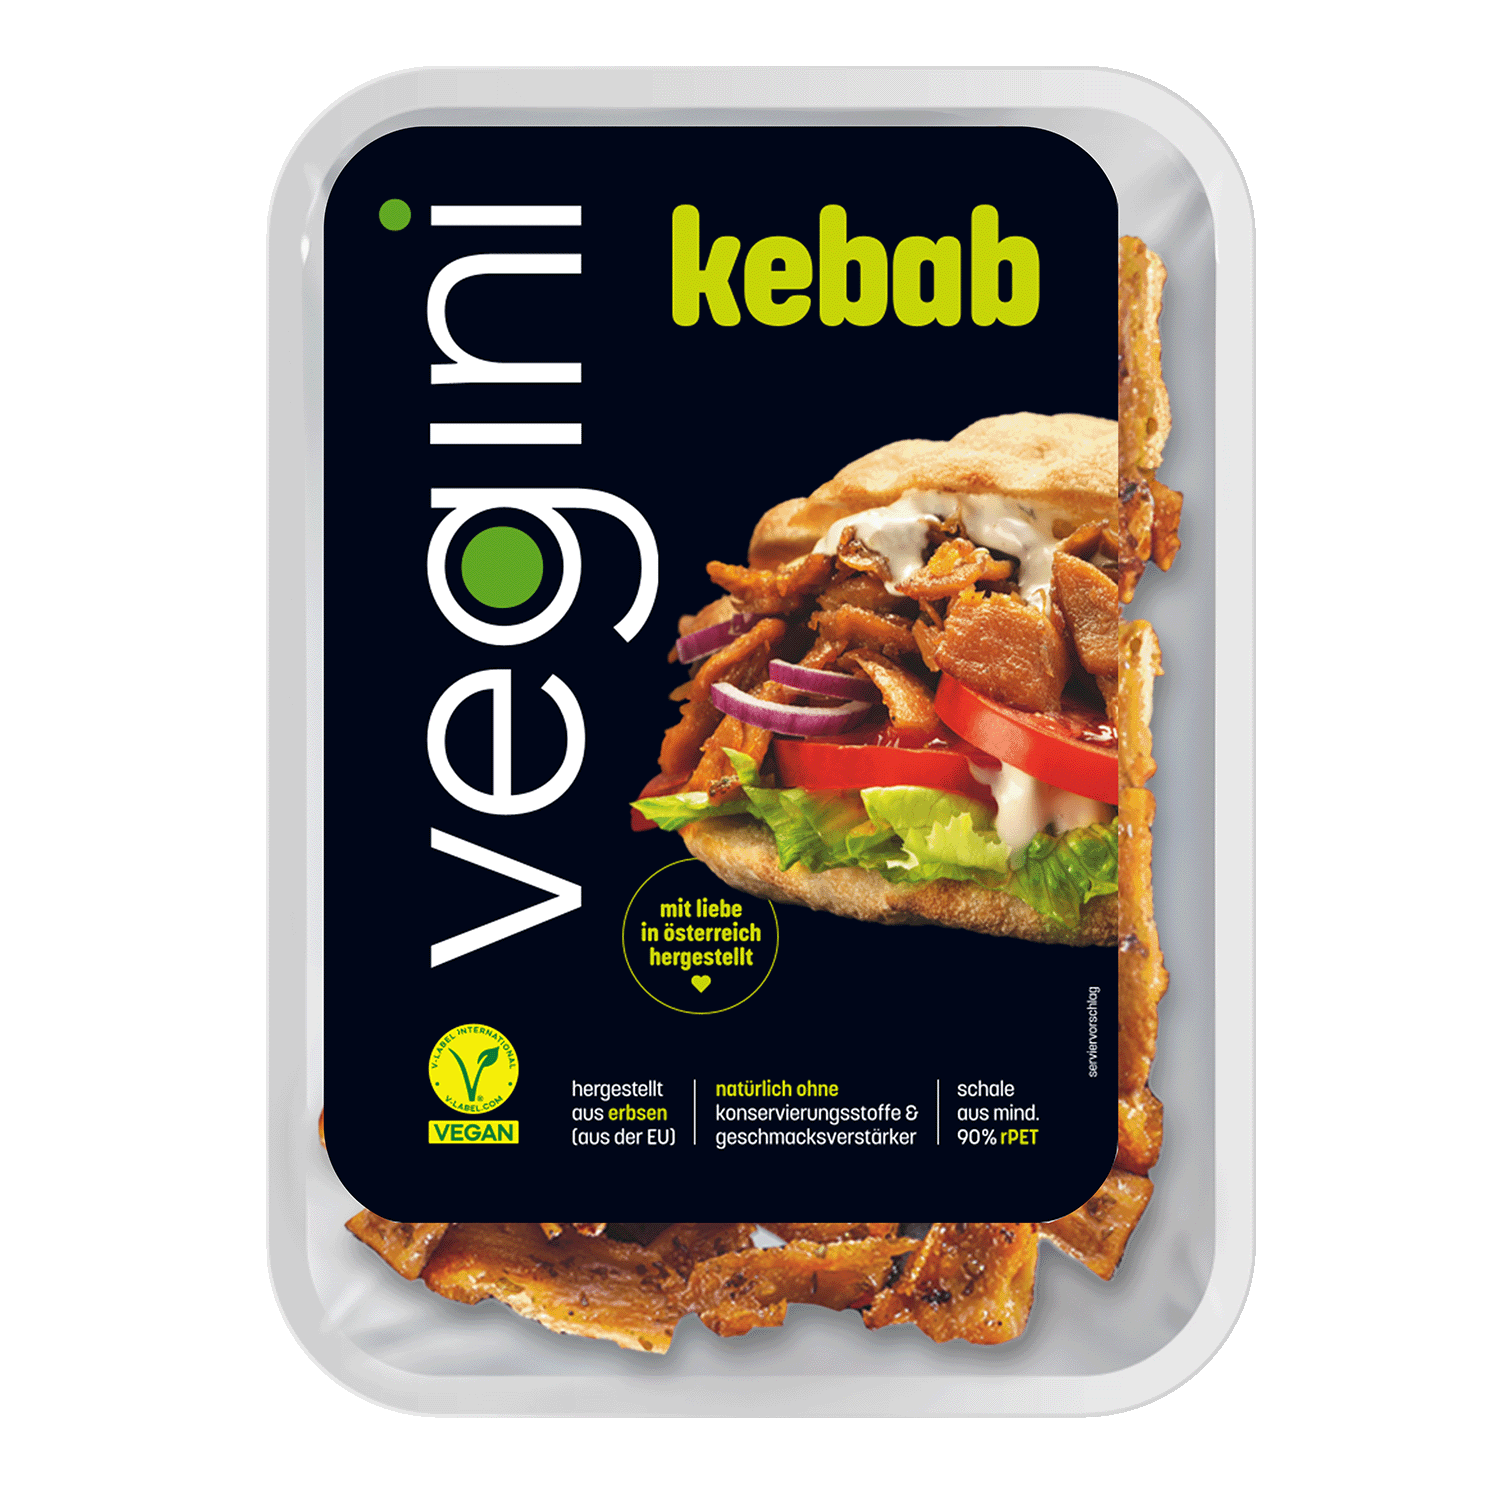 Vegan Kebab, 140g